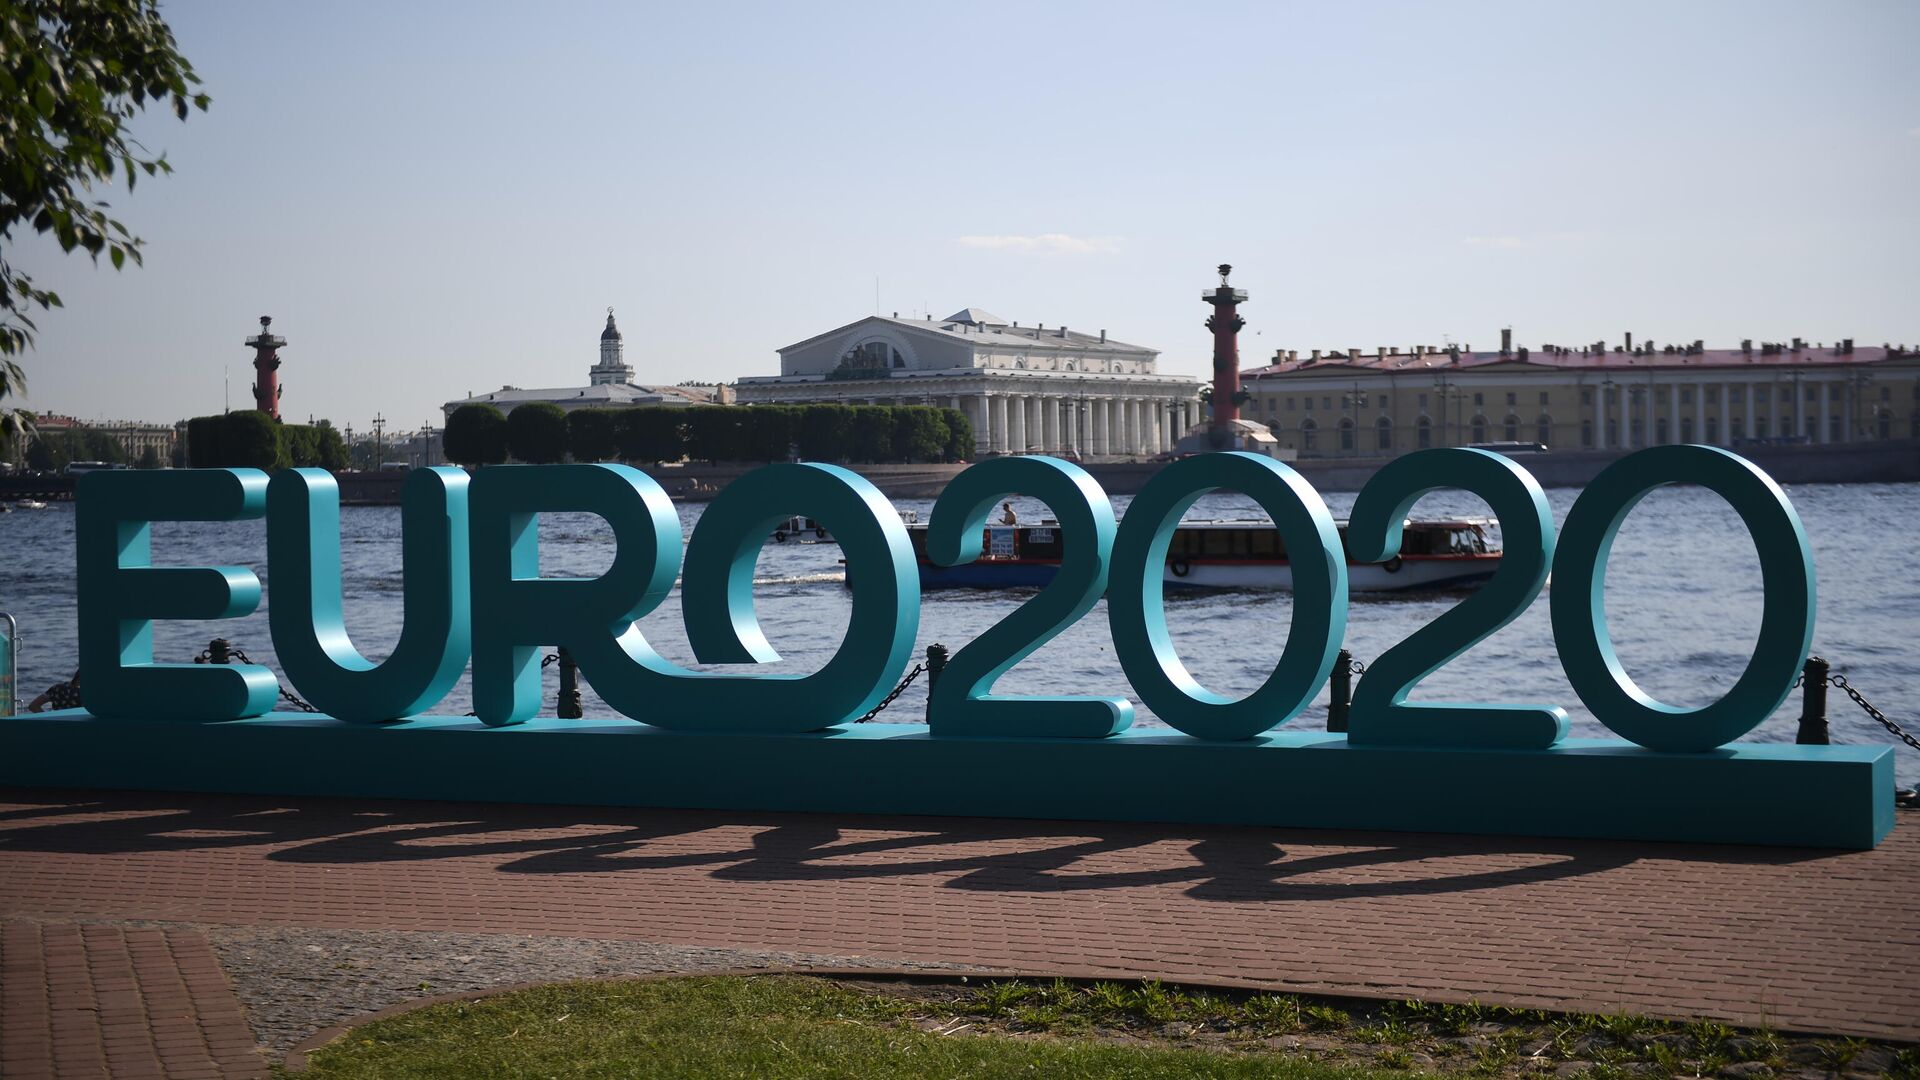 Открытие парка футбола Евро-2020 в Санкт-Петербурге  - РИА Новости, 1920, 14.04.2021